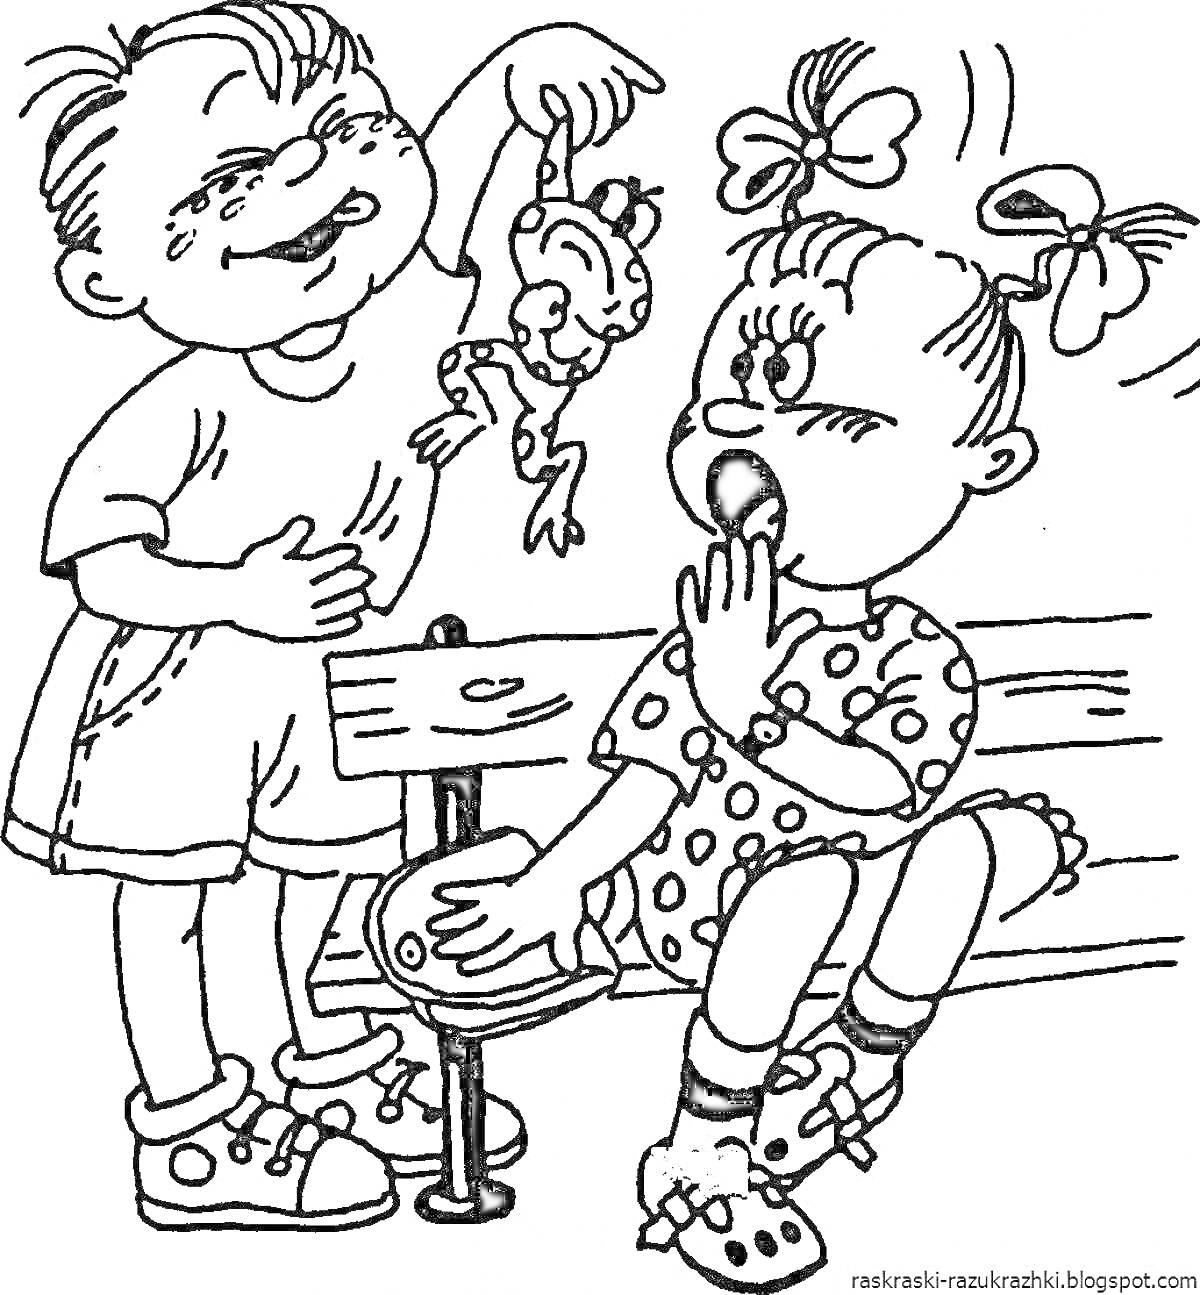 Раскраска Мальчик и девочка на скамейке, мальчик пугает девочку лягушкой